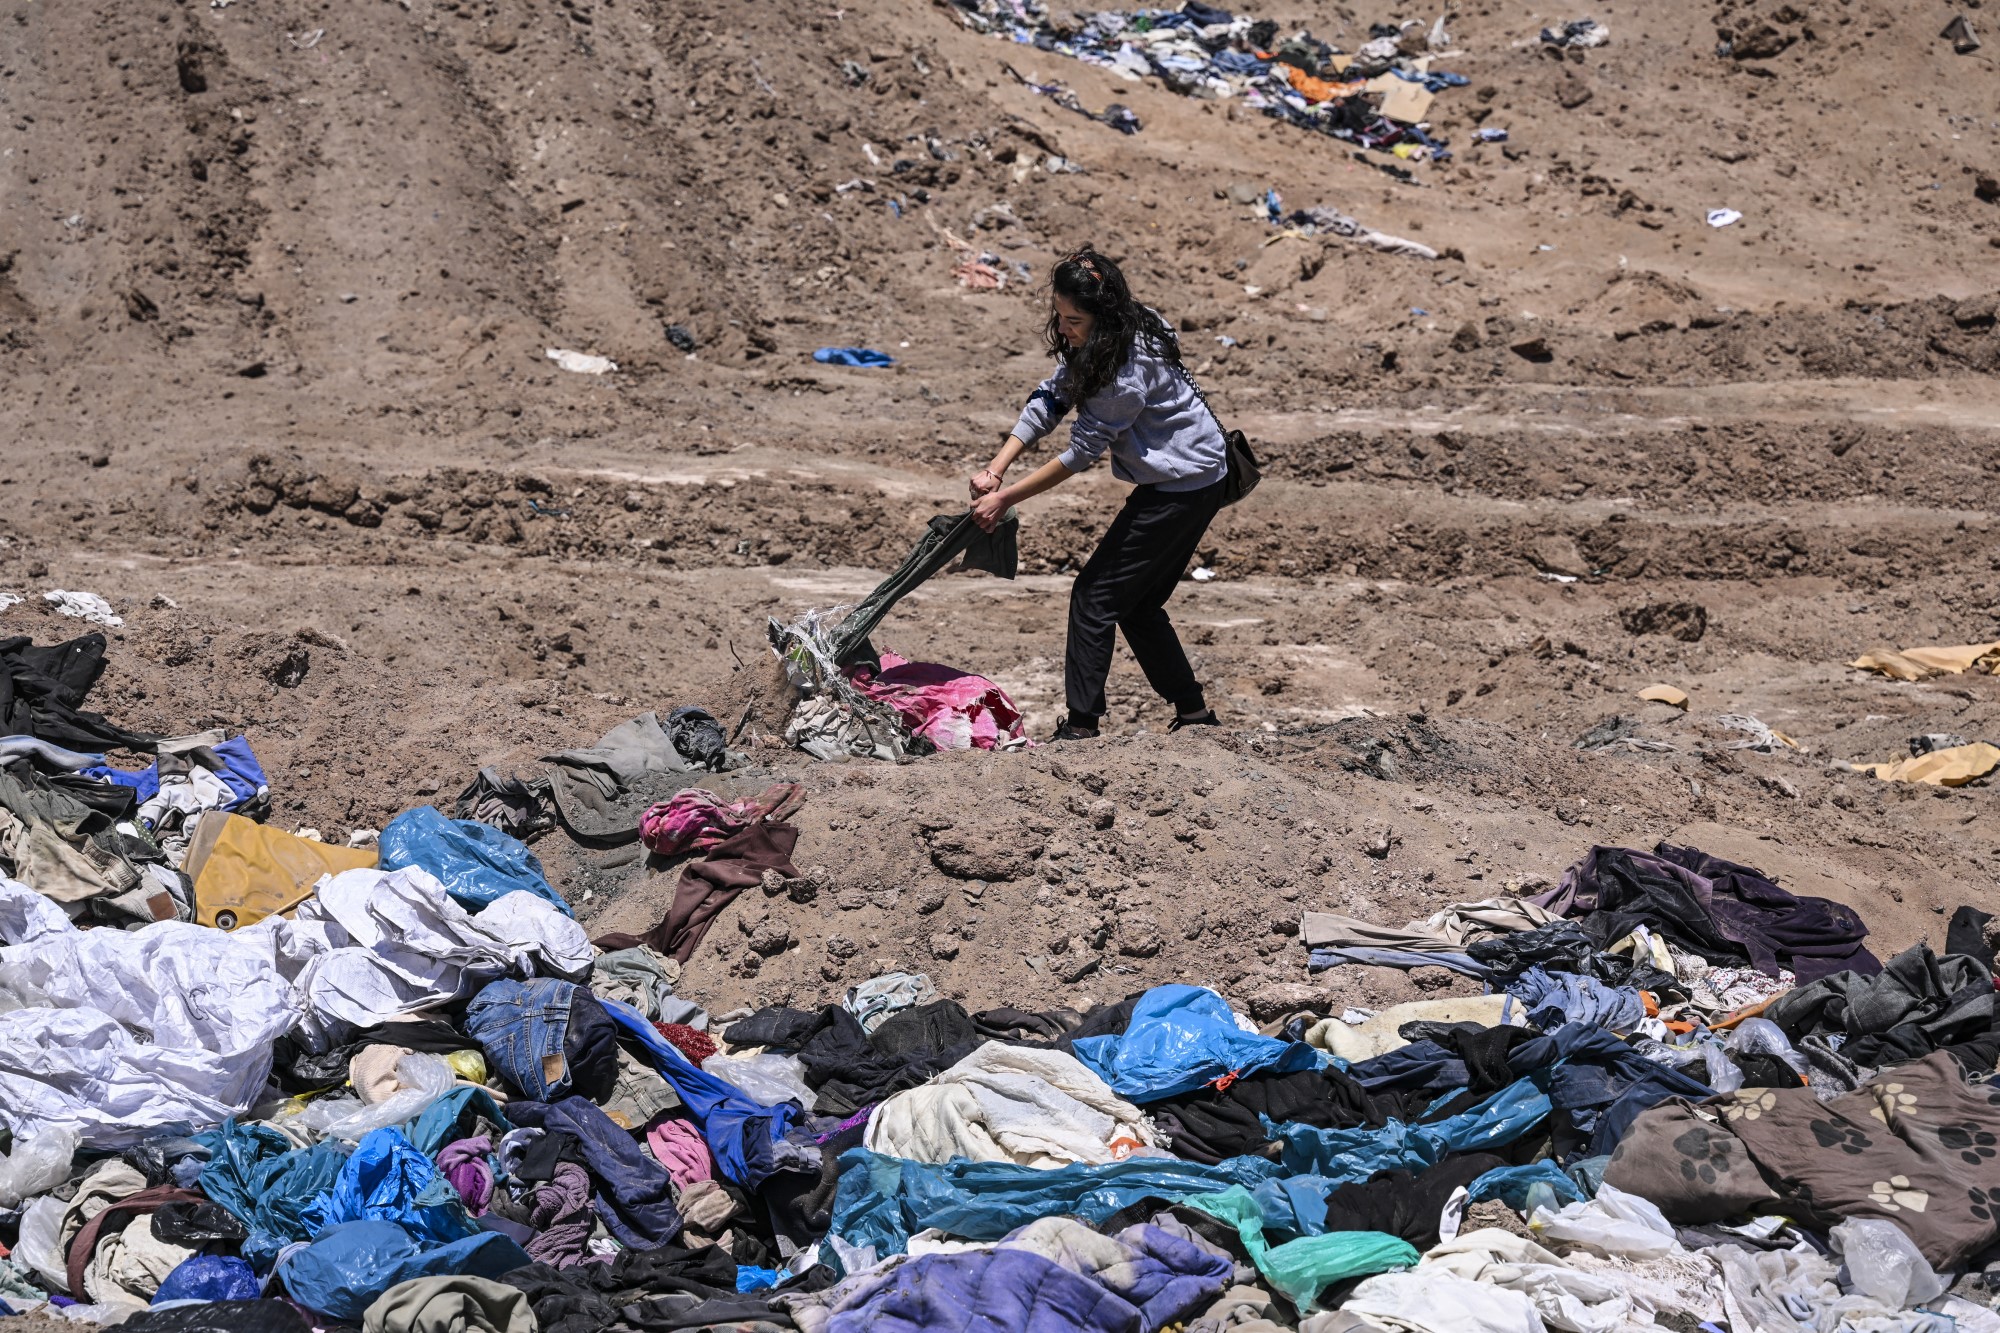 Paulina Silva ügyvédnő mutatja a sivatagba dobott ruhákat a chilei Iquique városától mintegy 10 kilométerre.